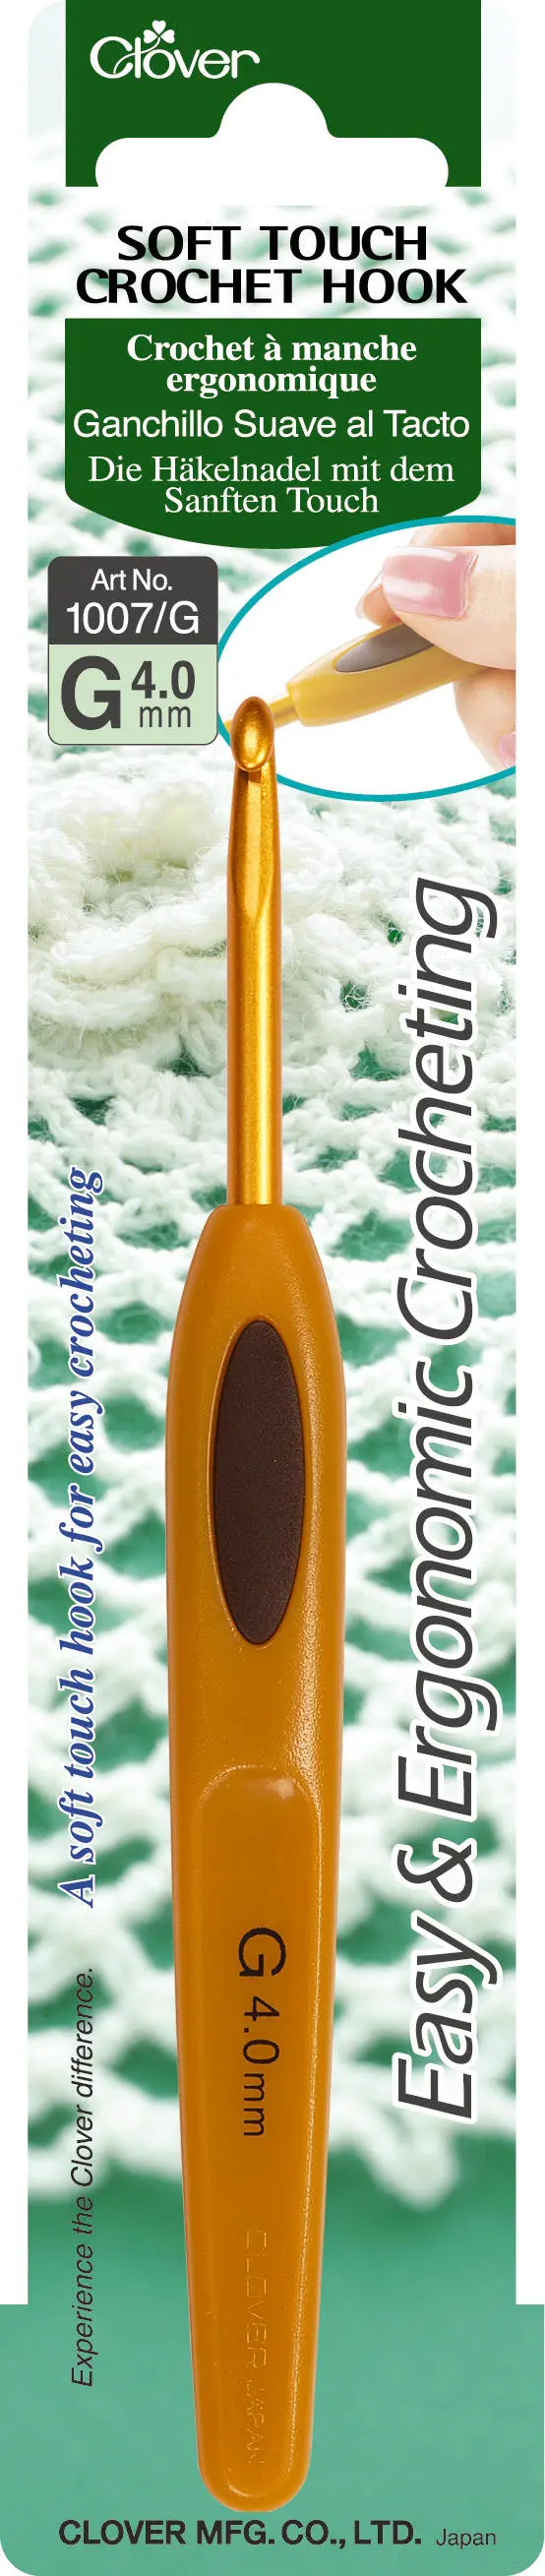 Clover Crochet Hook - Soft Touch - 3.75mm